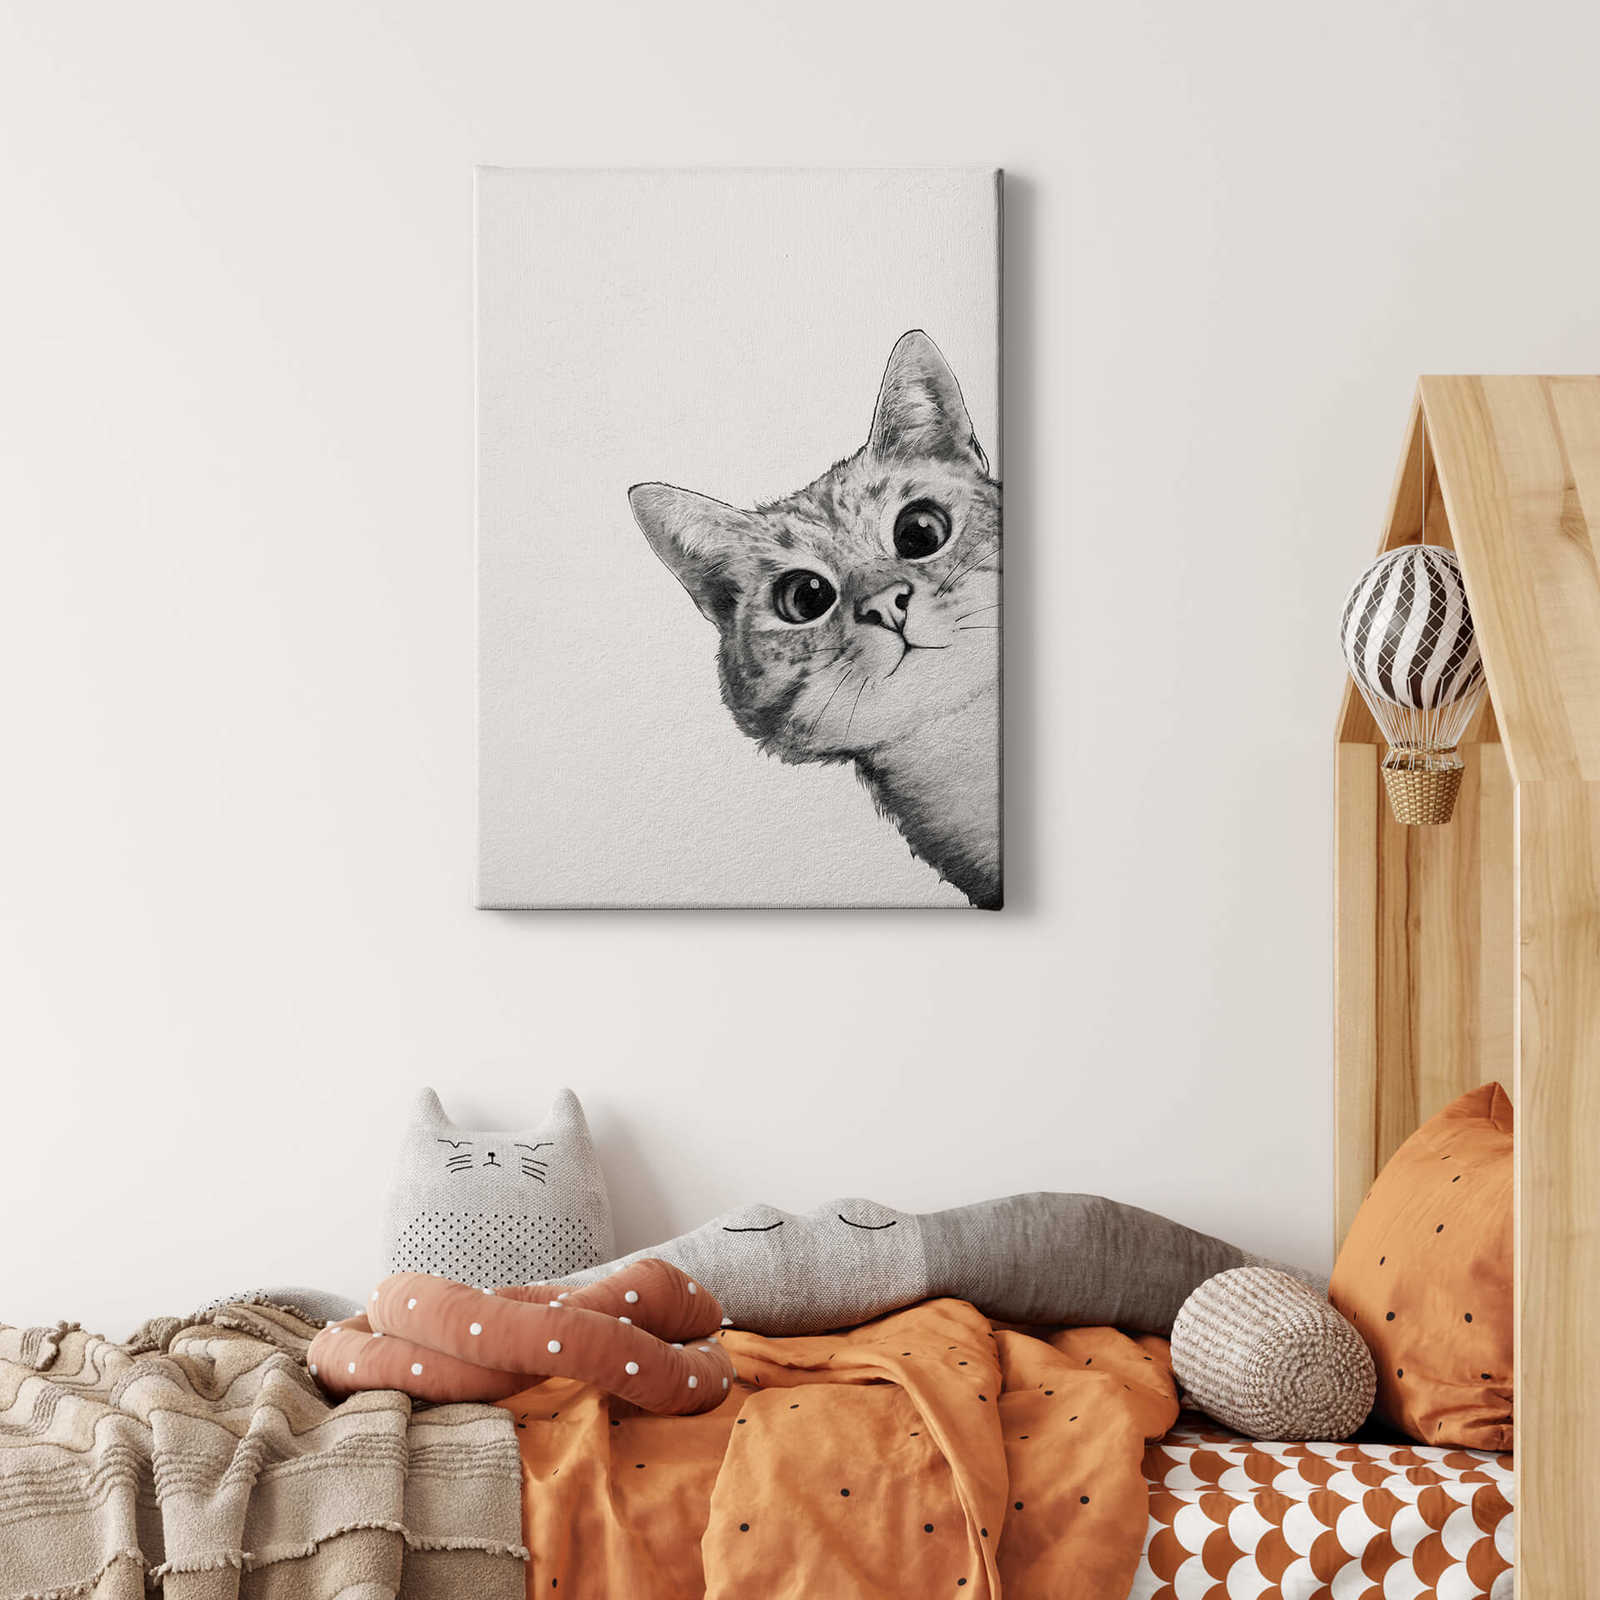             Leinwandbild "Sneaky Cat" von Graves, Katze in Schwarz-Weiß – 0,50 m x 0,70 m
        